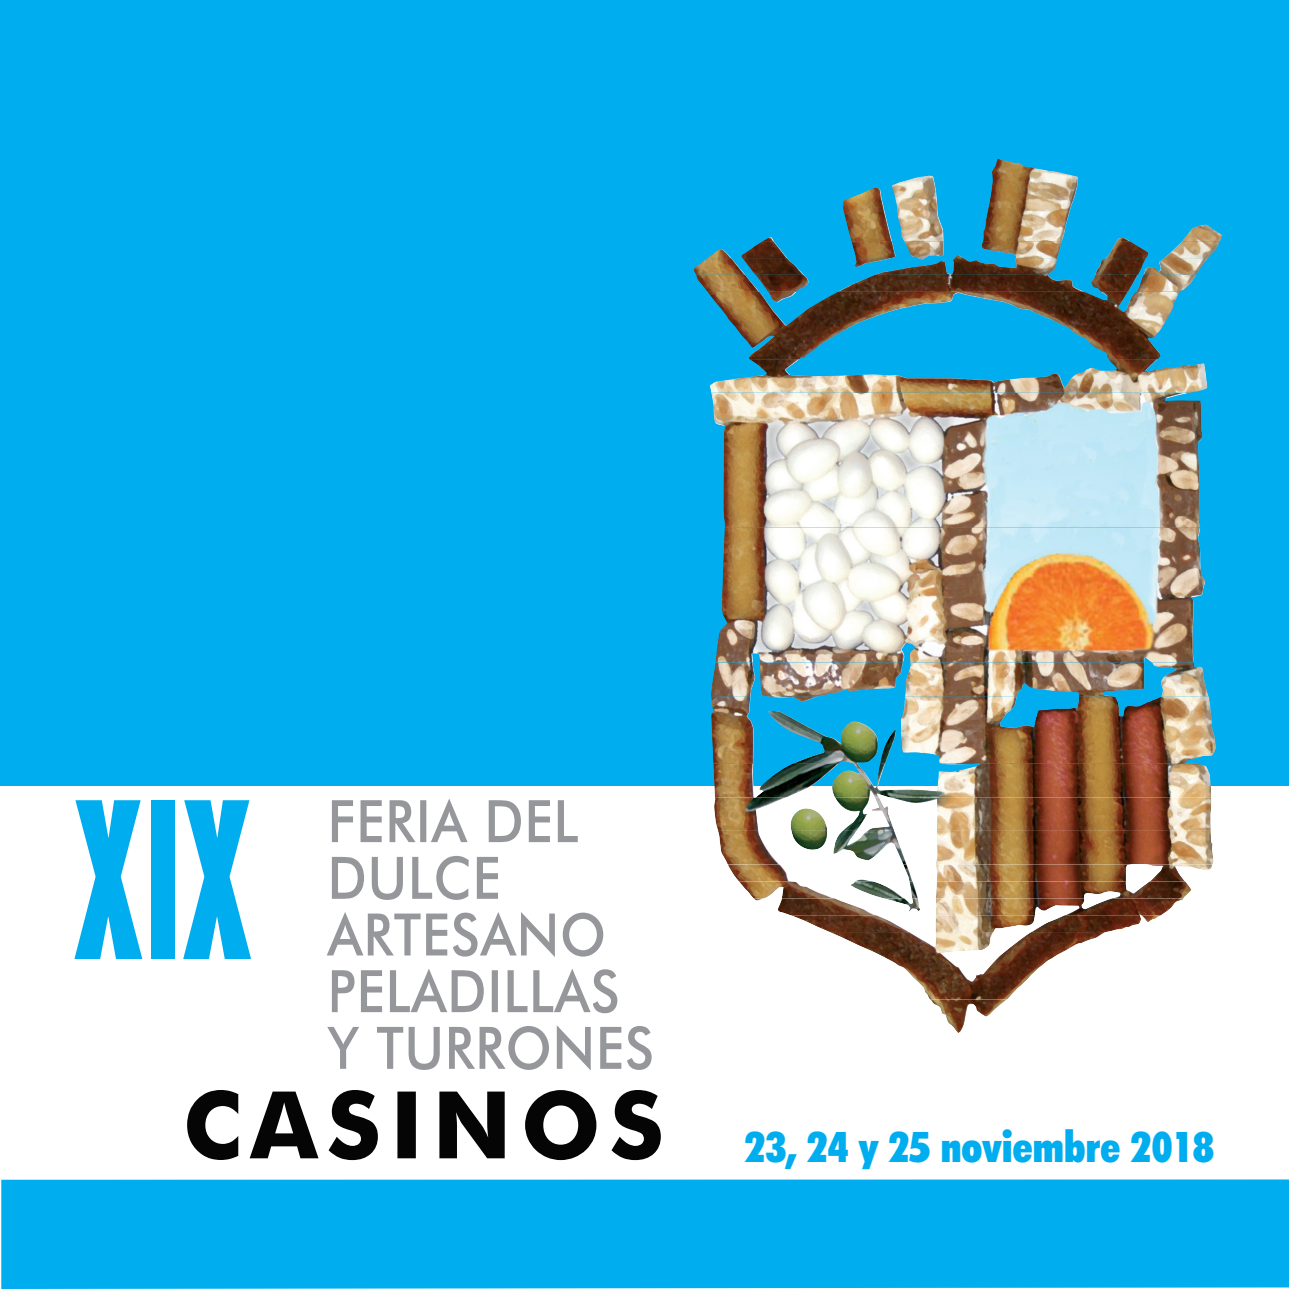 XIX Feria del Dulce Artesano, Peladillas y Turrones de Casinos